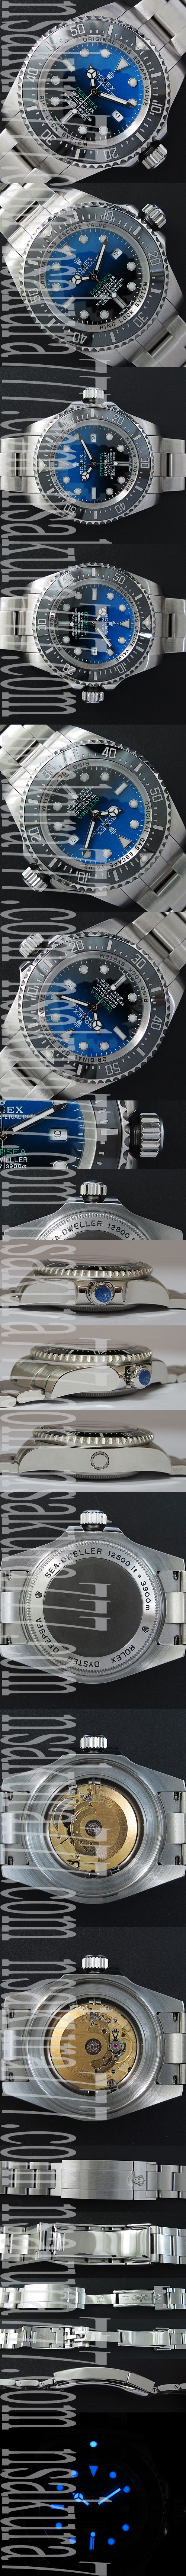 レプリカ時計ロレックス シードゥエラーディープシー Swiss 2836-2 ハイエンドモデル - ウインドウを閉じる